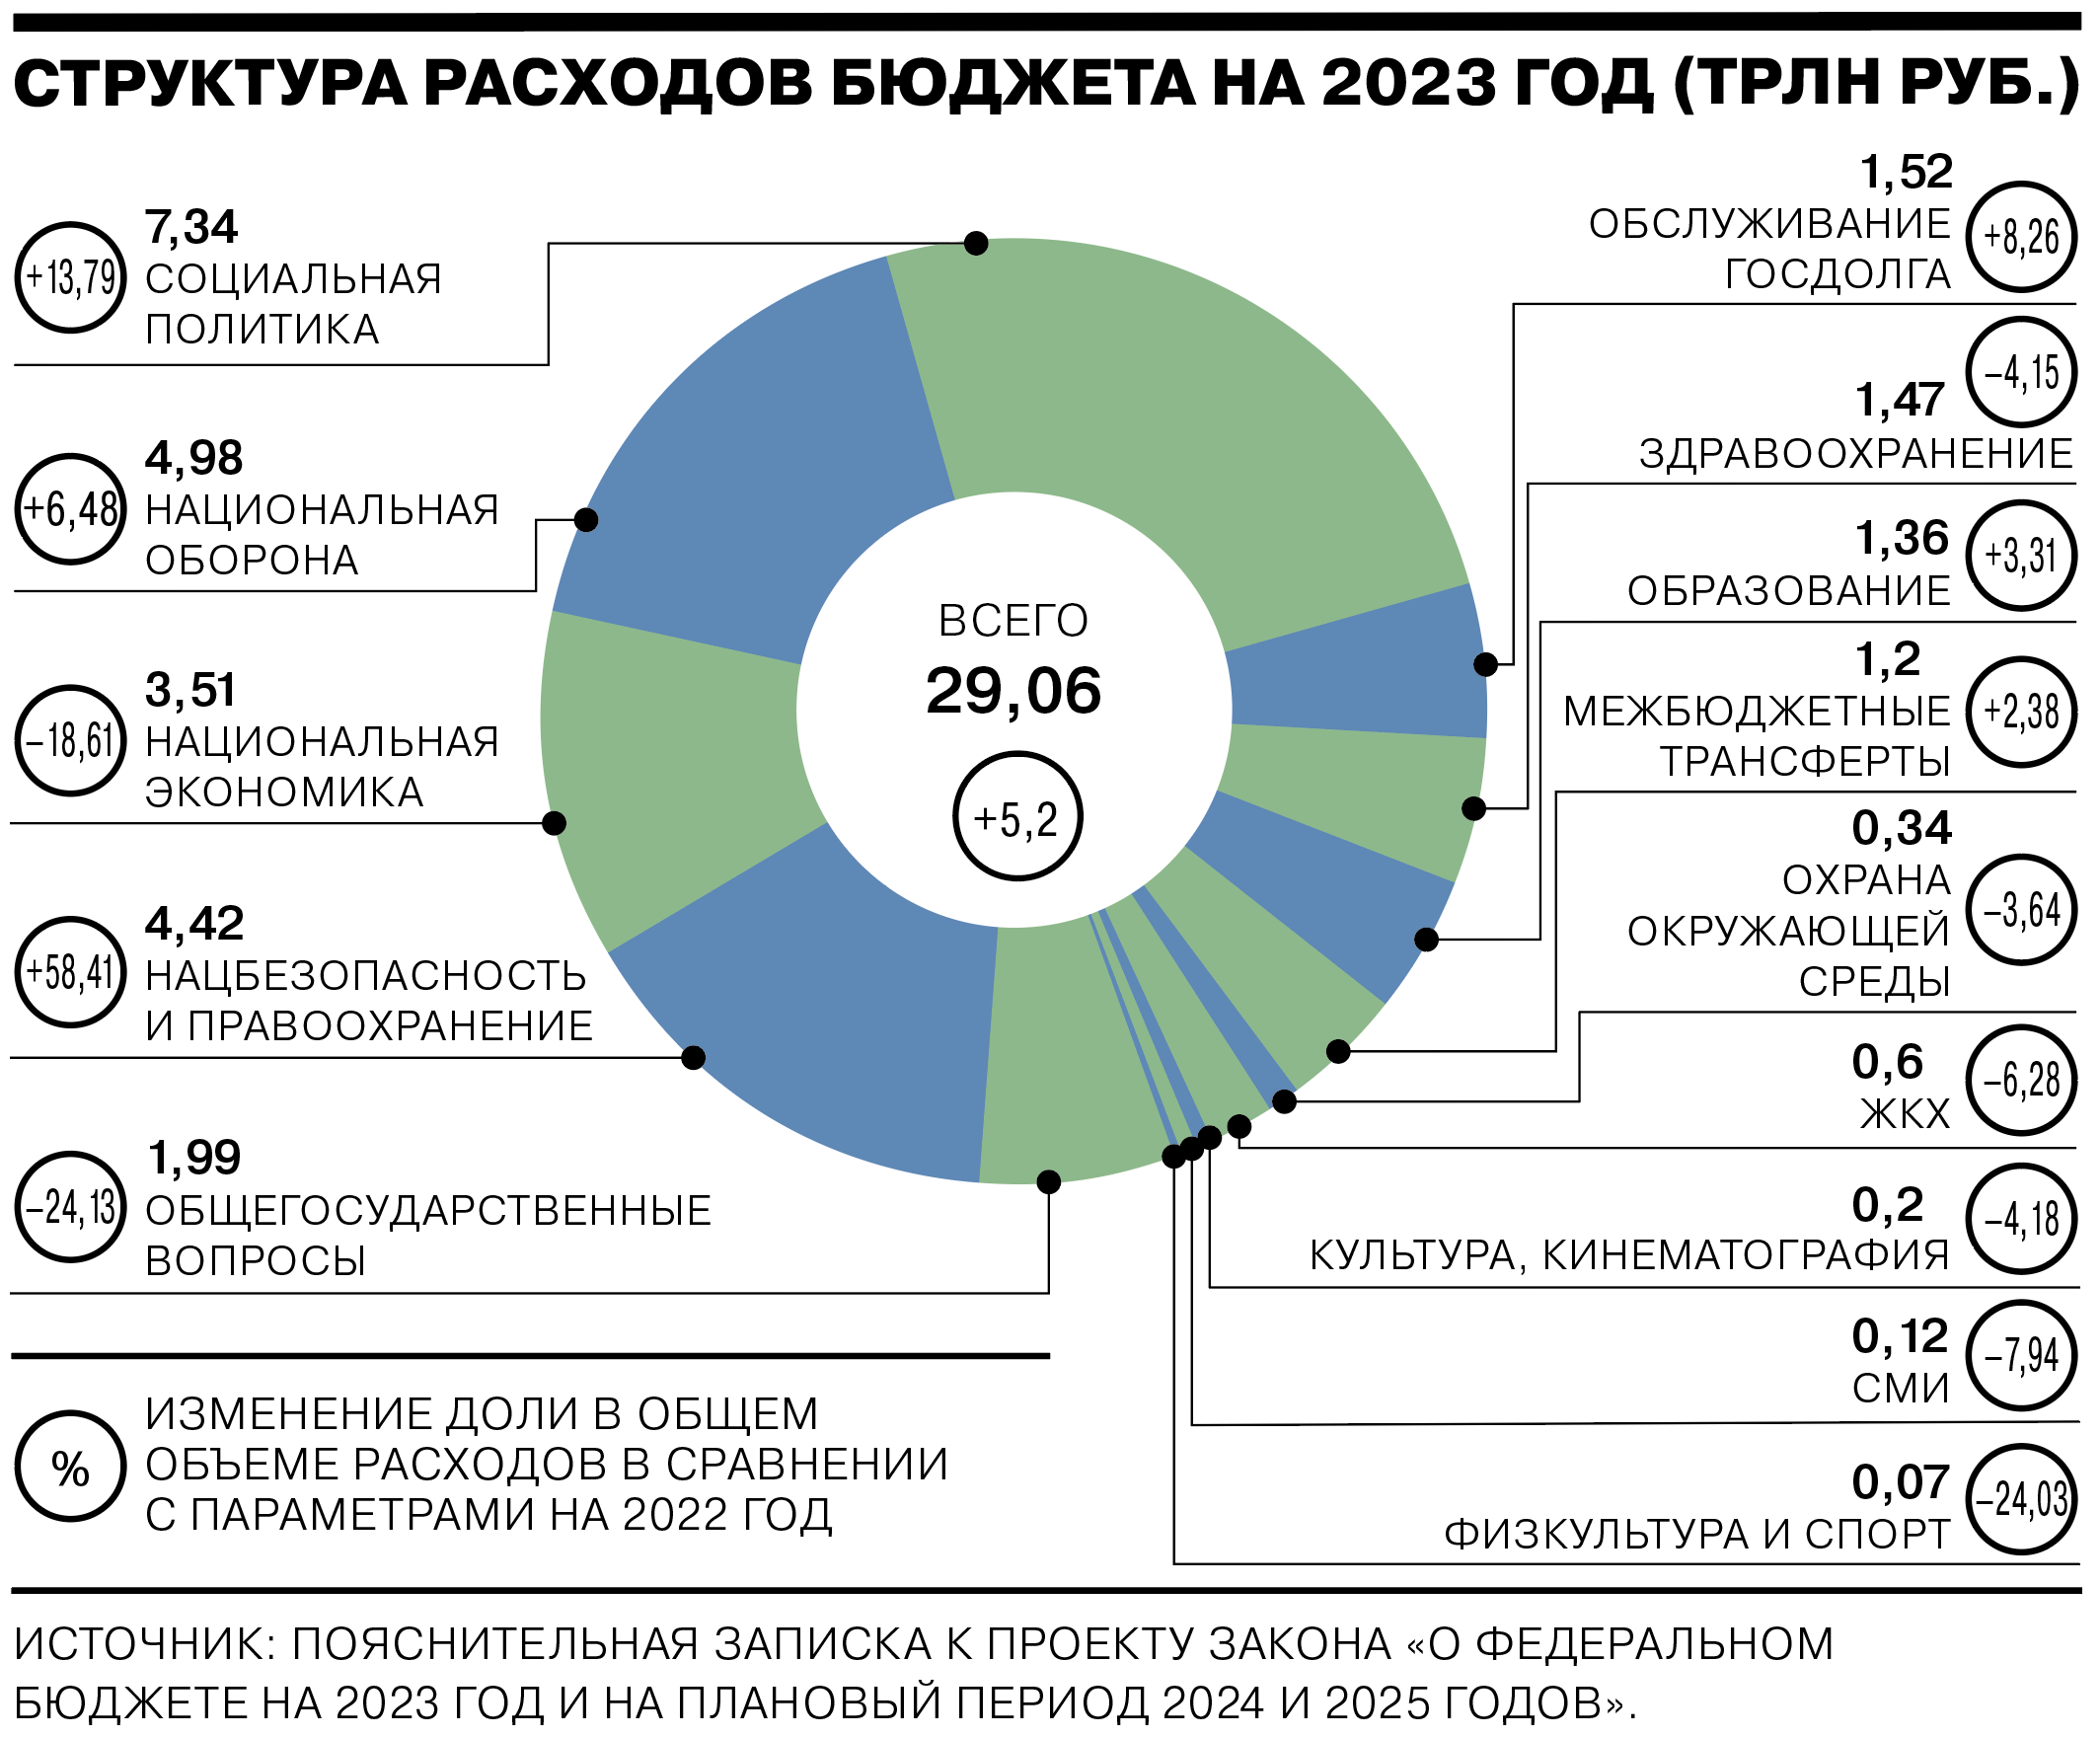 Составляющие доходов бюджета рф. Структура доходов РФ 2022. Структура федерального бюджета 2023. Структура расходов бюджета России на 2022 год. Структура расходов бюджета на 2023 год.